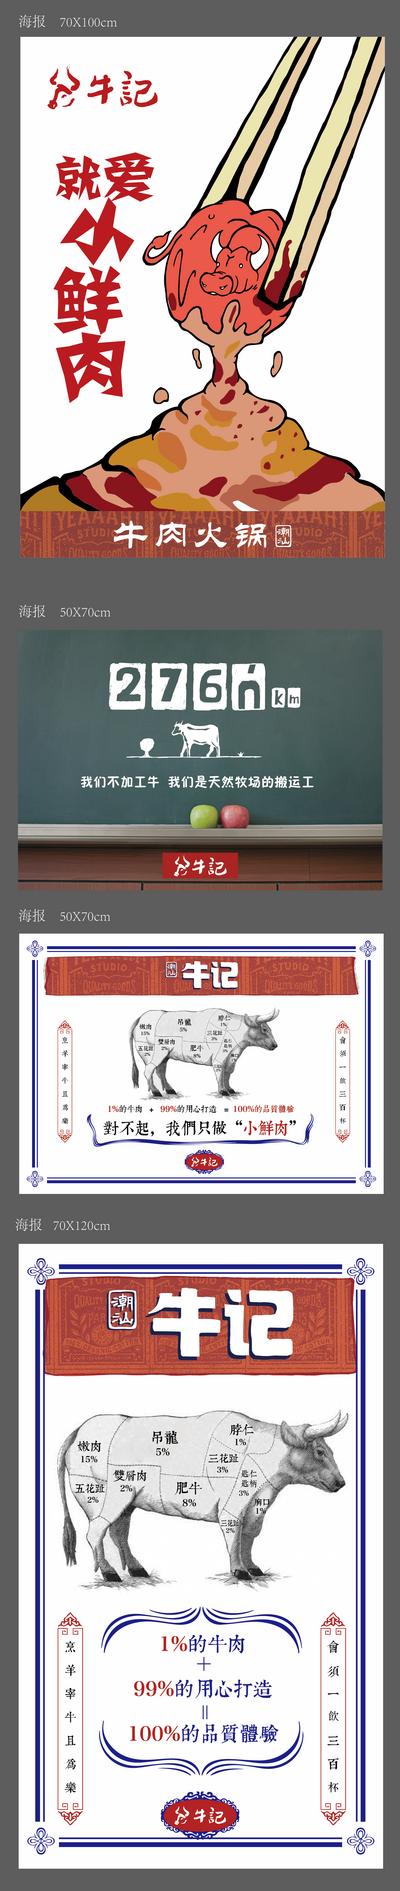 南门网 海报 背景板 餐饮 食物 牛肉 火锅 分解图